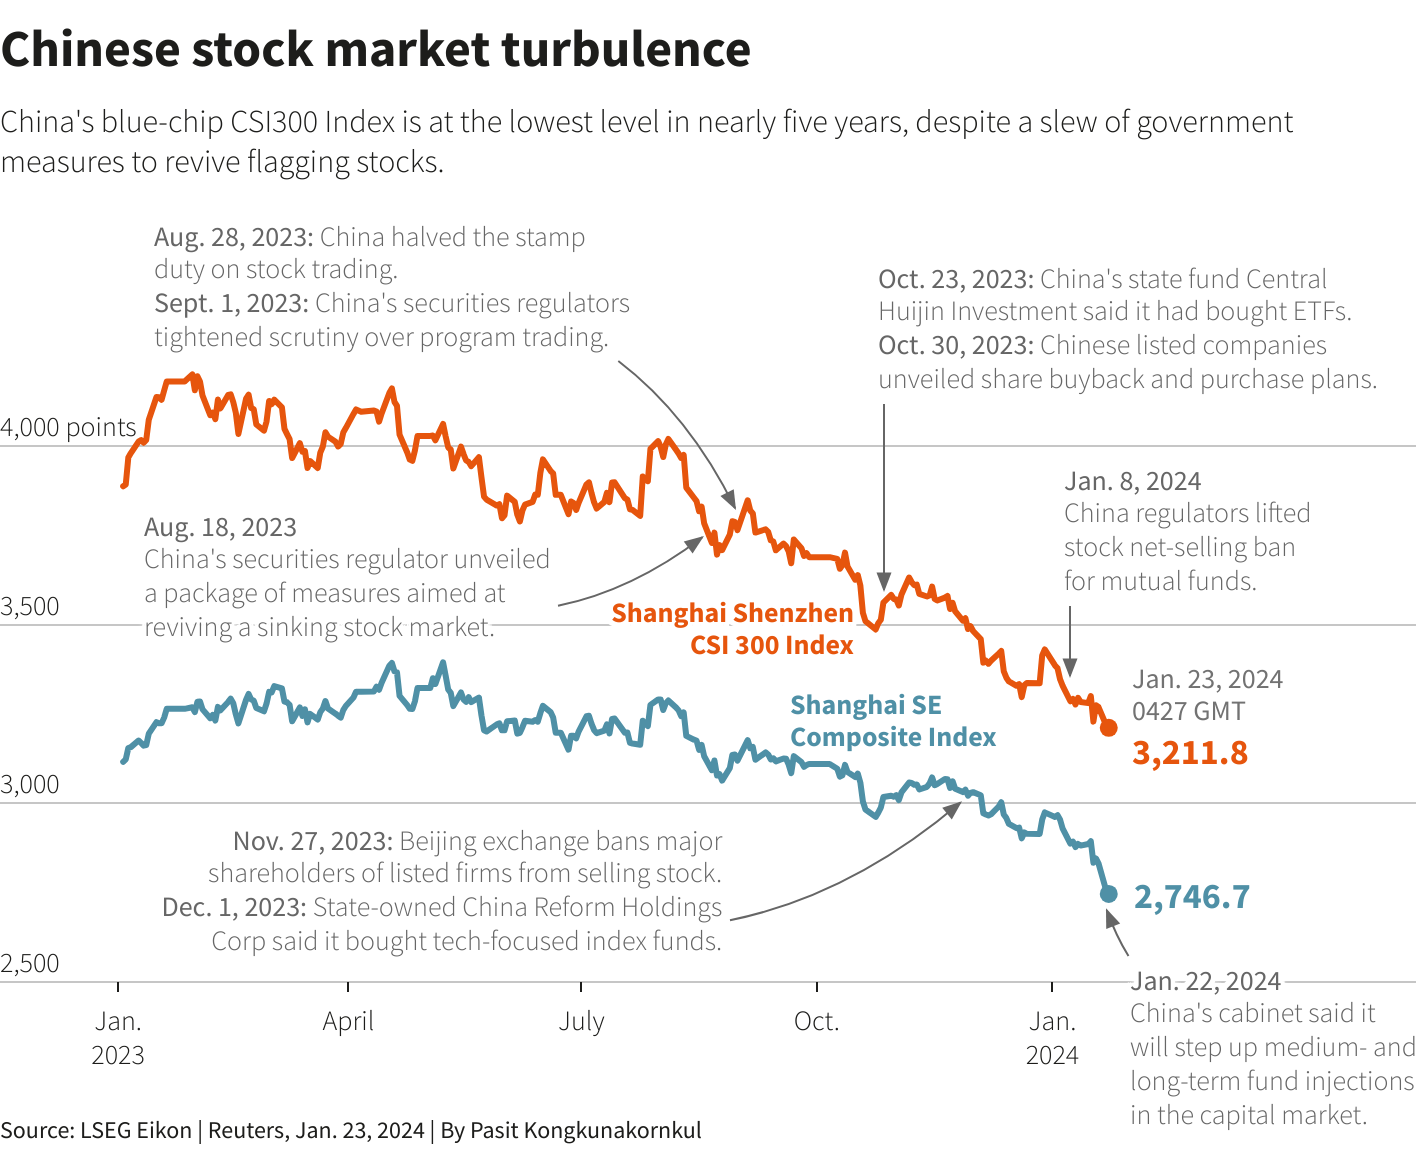 Chinese stock market turbulence chart
